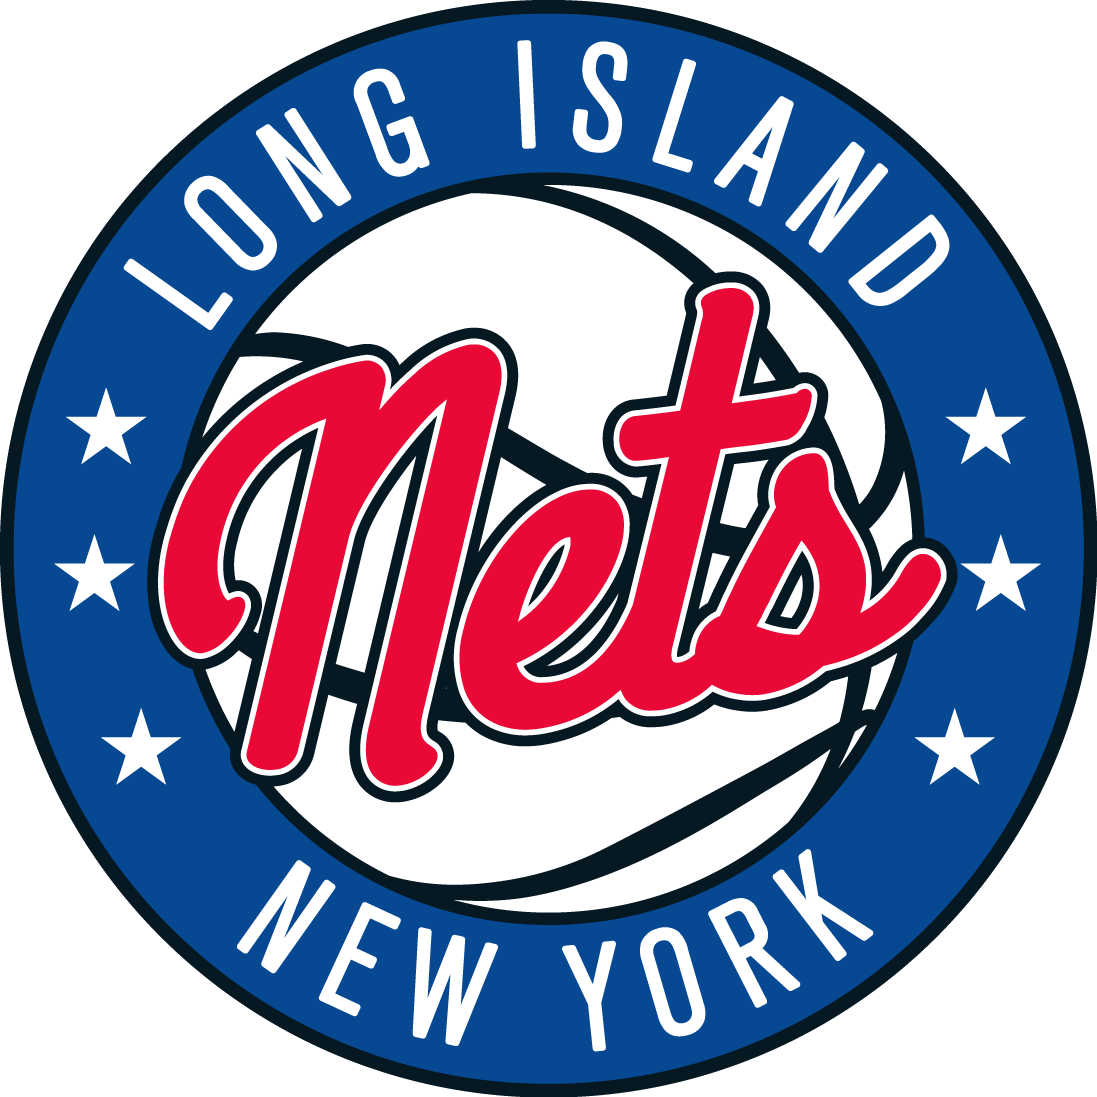 Nets Logo - Long Island Nets Logo G League. Basketball. NBA, Basketball, Minor